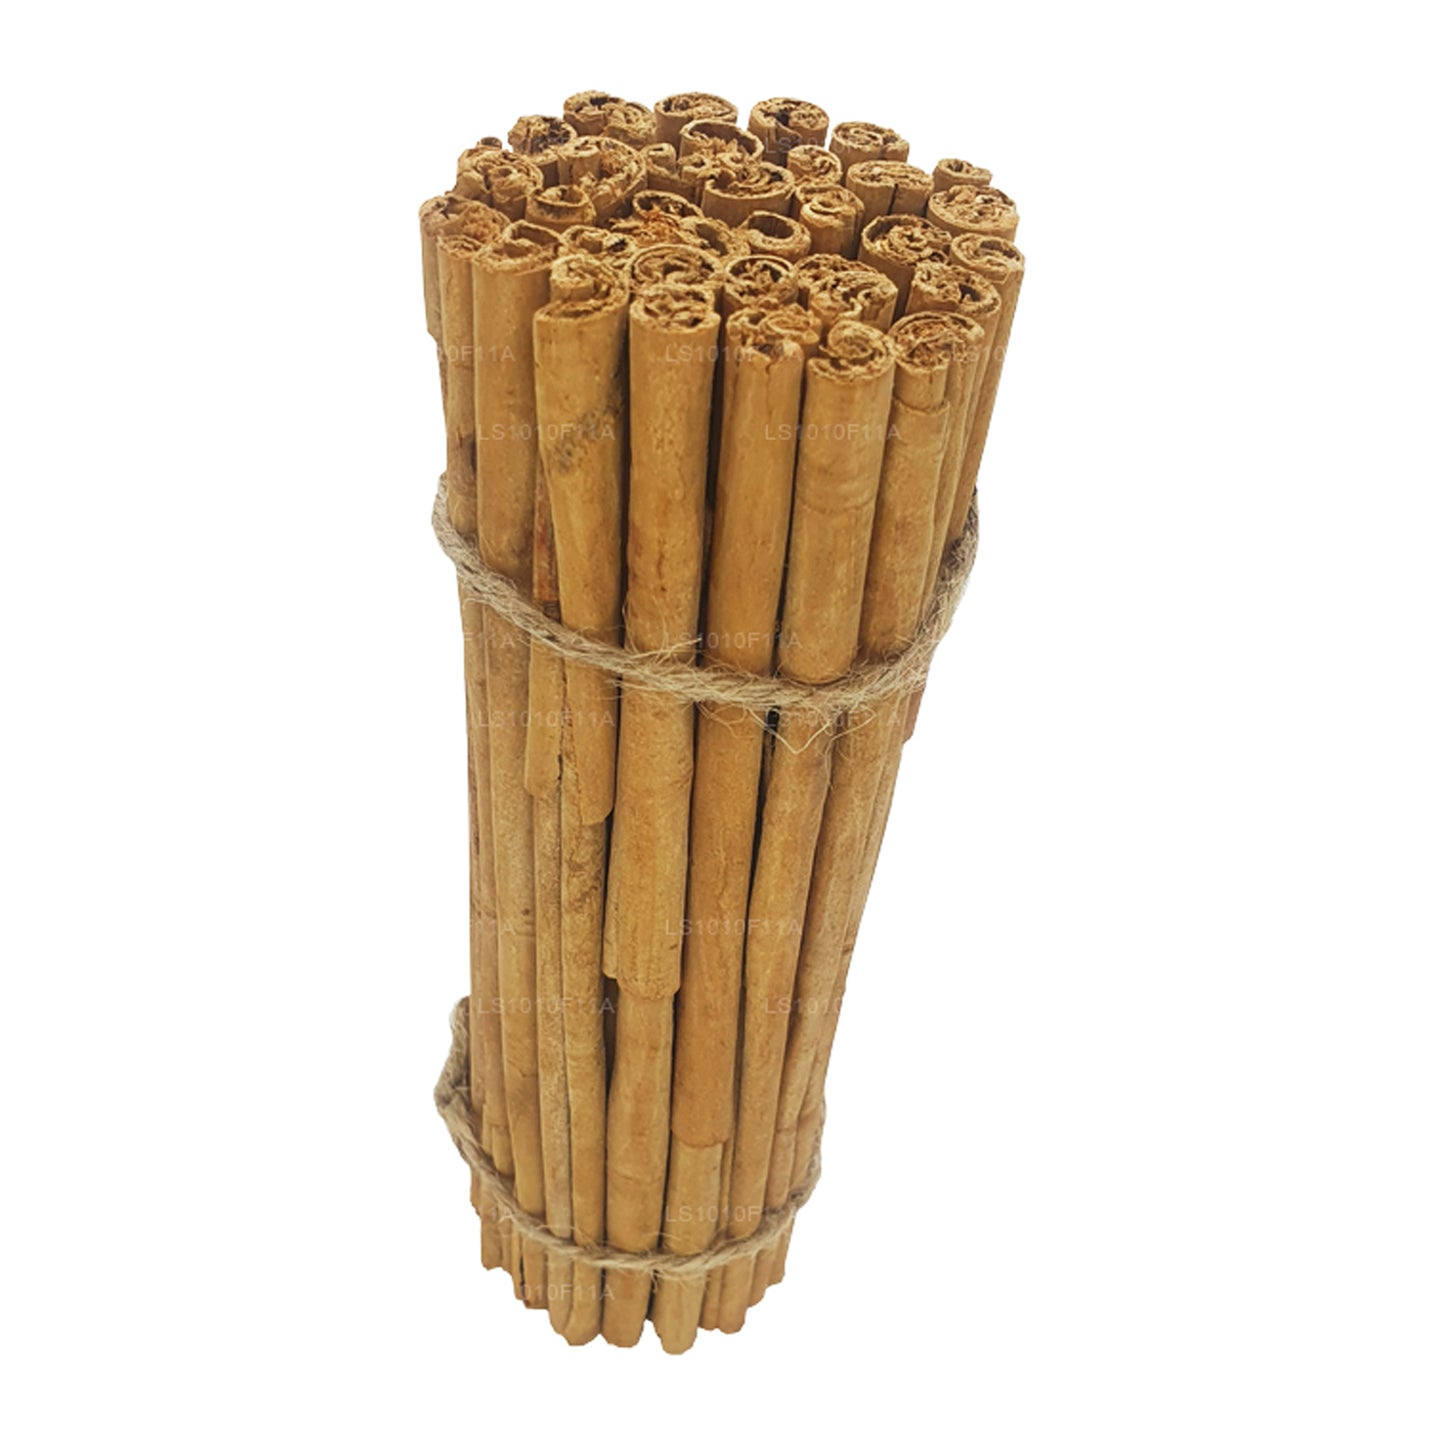 Lakpura ”C5 Extra Special” Grade Ceylon True Cinnamon Barks Pack